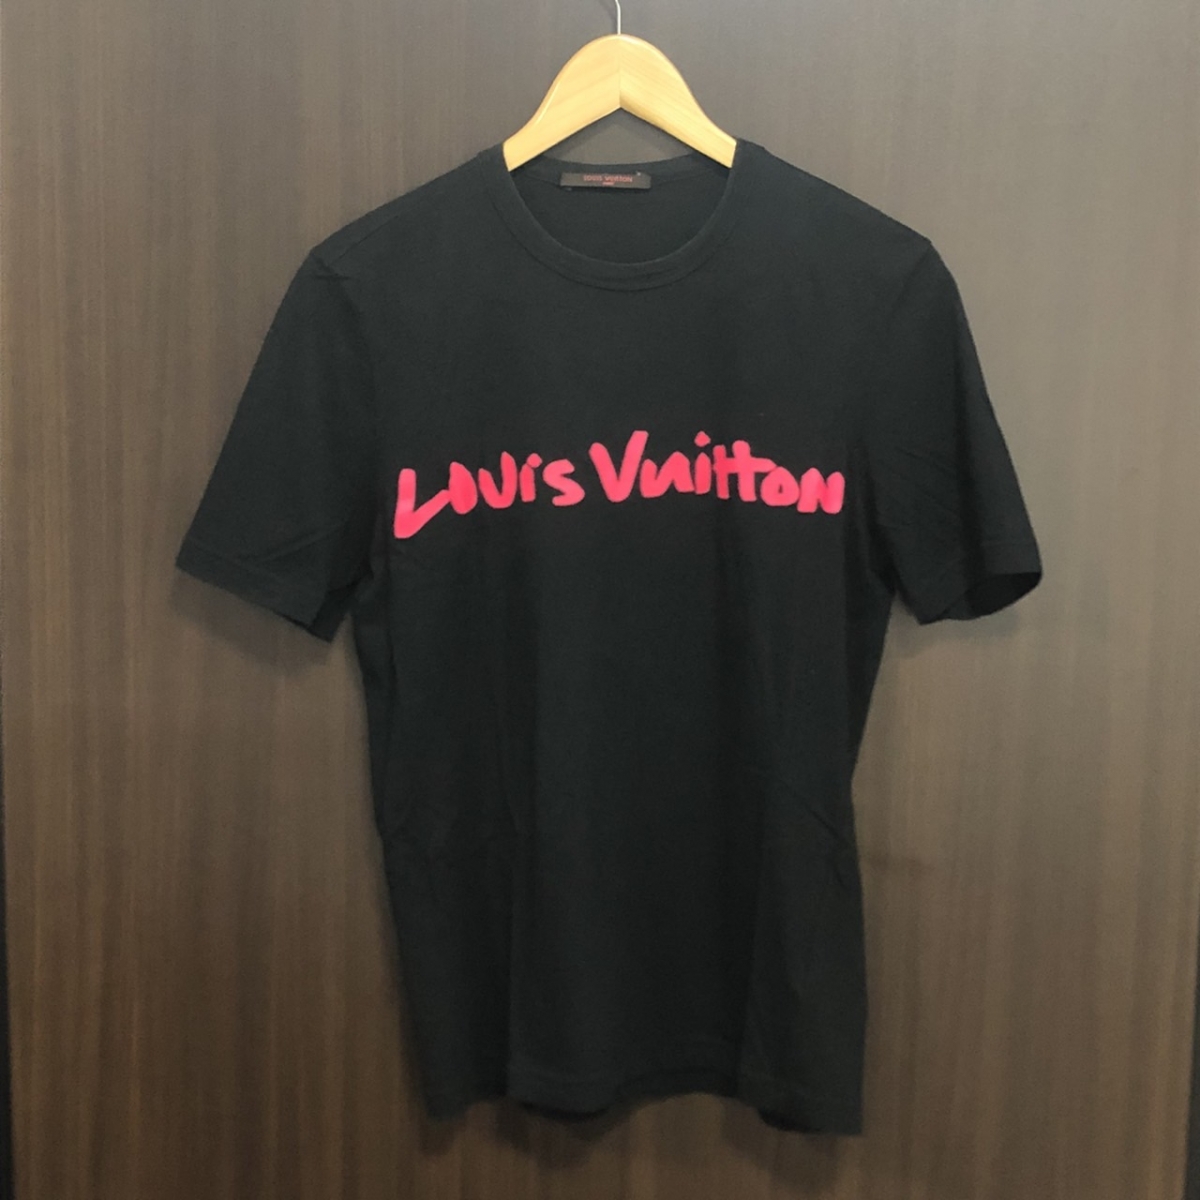 ルイヴィトンの2009年製 ×スティーブン・スプラウス グラフィティロゴ ブラック半袖Tシャツ RM0911S MOJR93JDTの買取実績です。